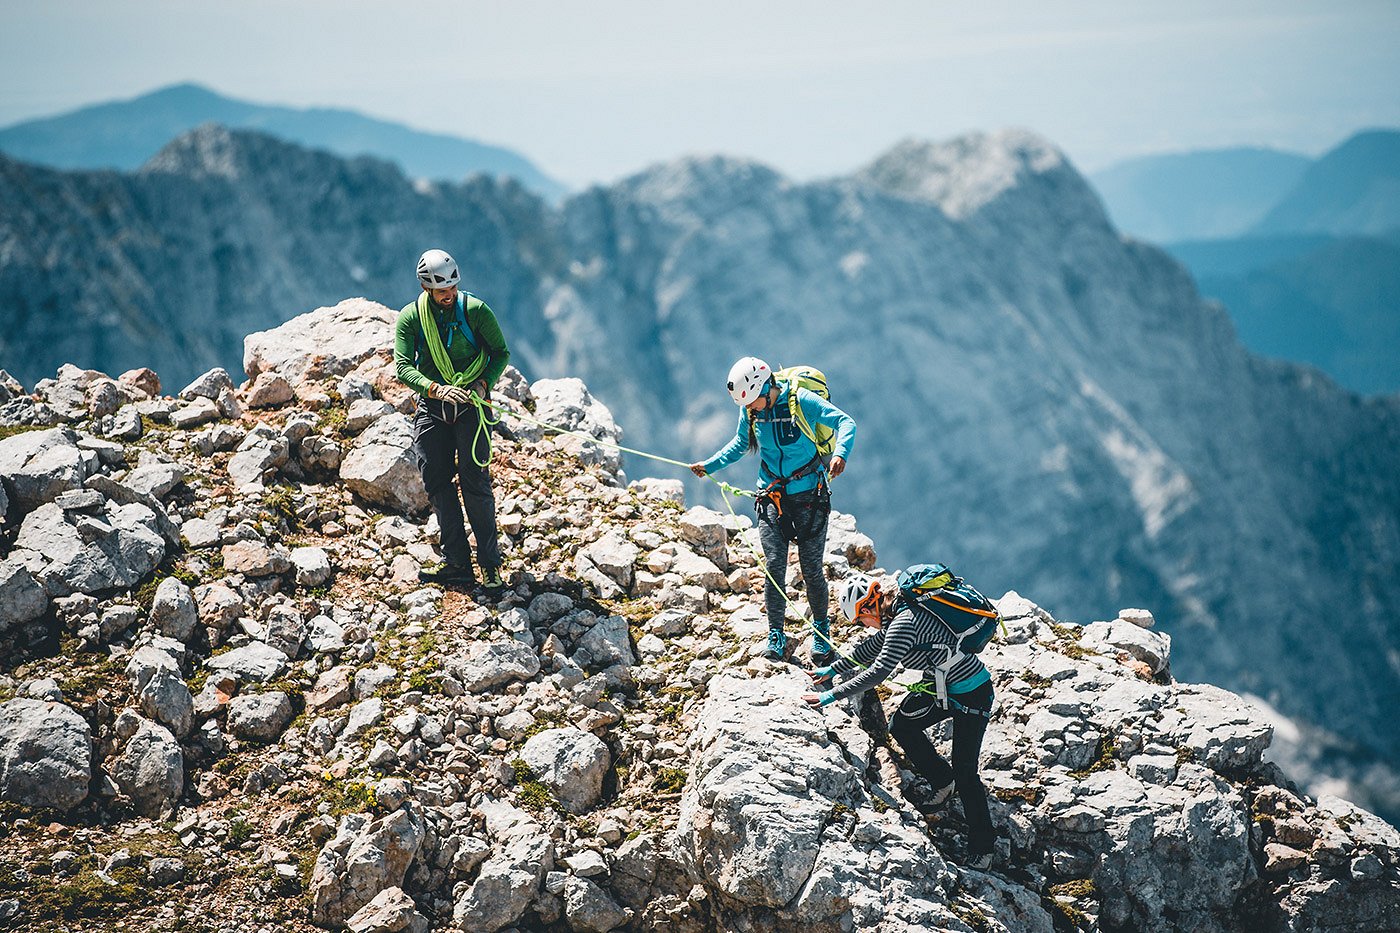 Gli escursionisti scalano la montagna in attrezzatura da alpinismo completo